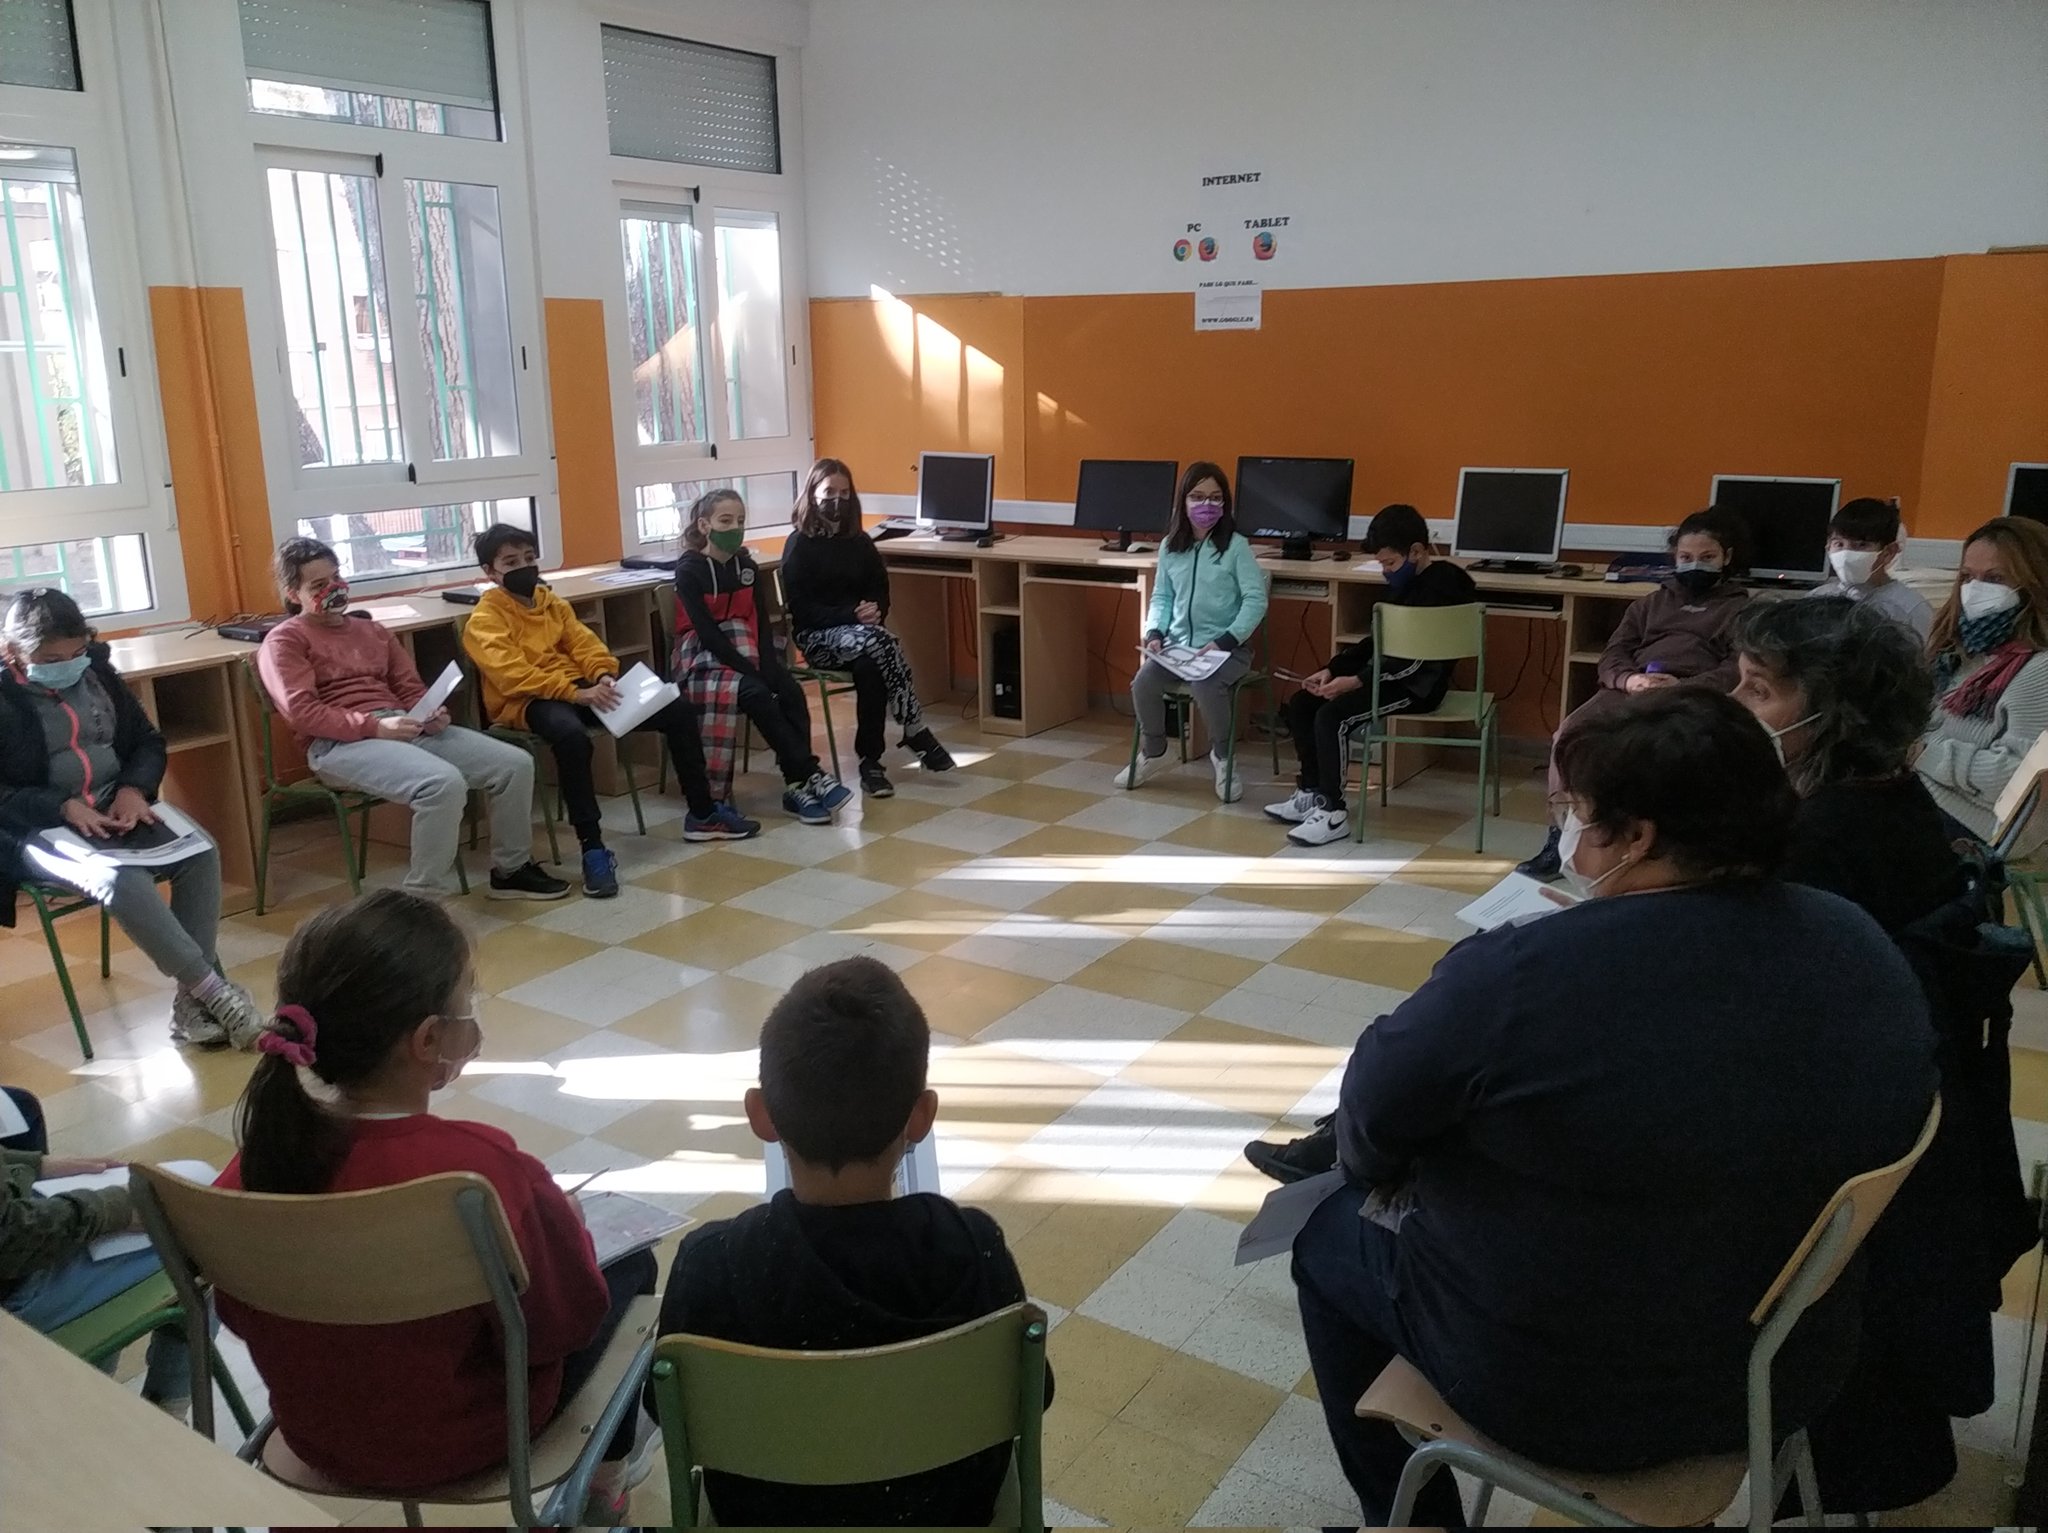 Presupuestos participativos en el CEIP “Domingo Miral”, de Zaragoza